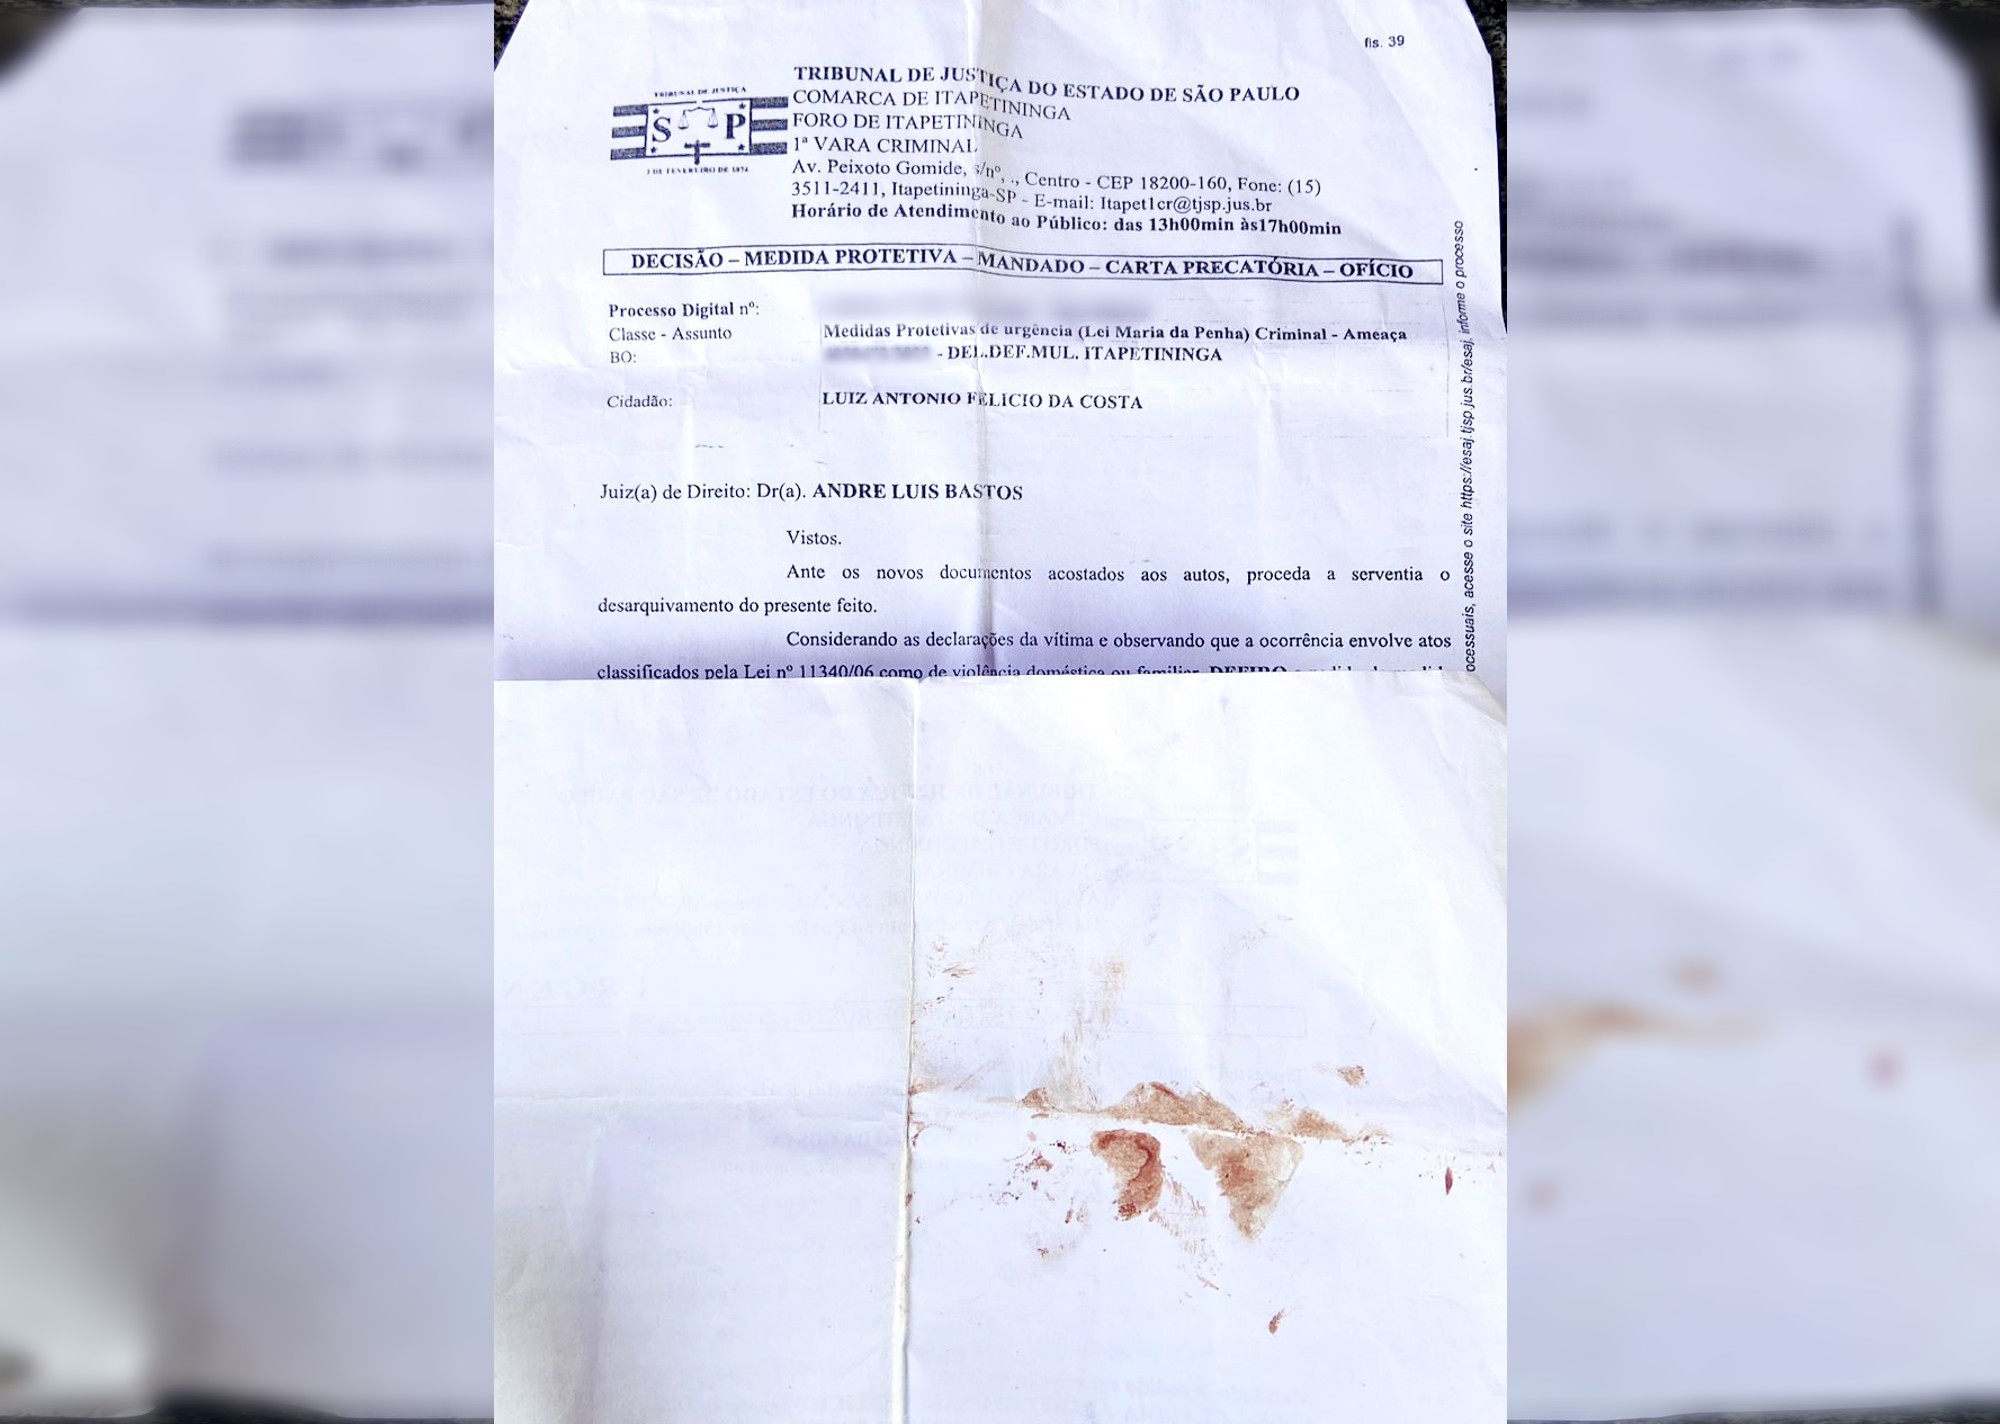 Mulher esfaqueada pelo ex carregava medida protetiva no momento do crime; foto mostra documento manchado de sangue